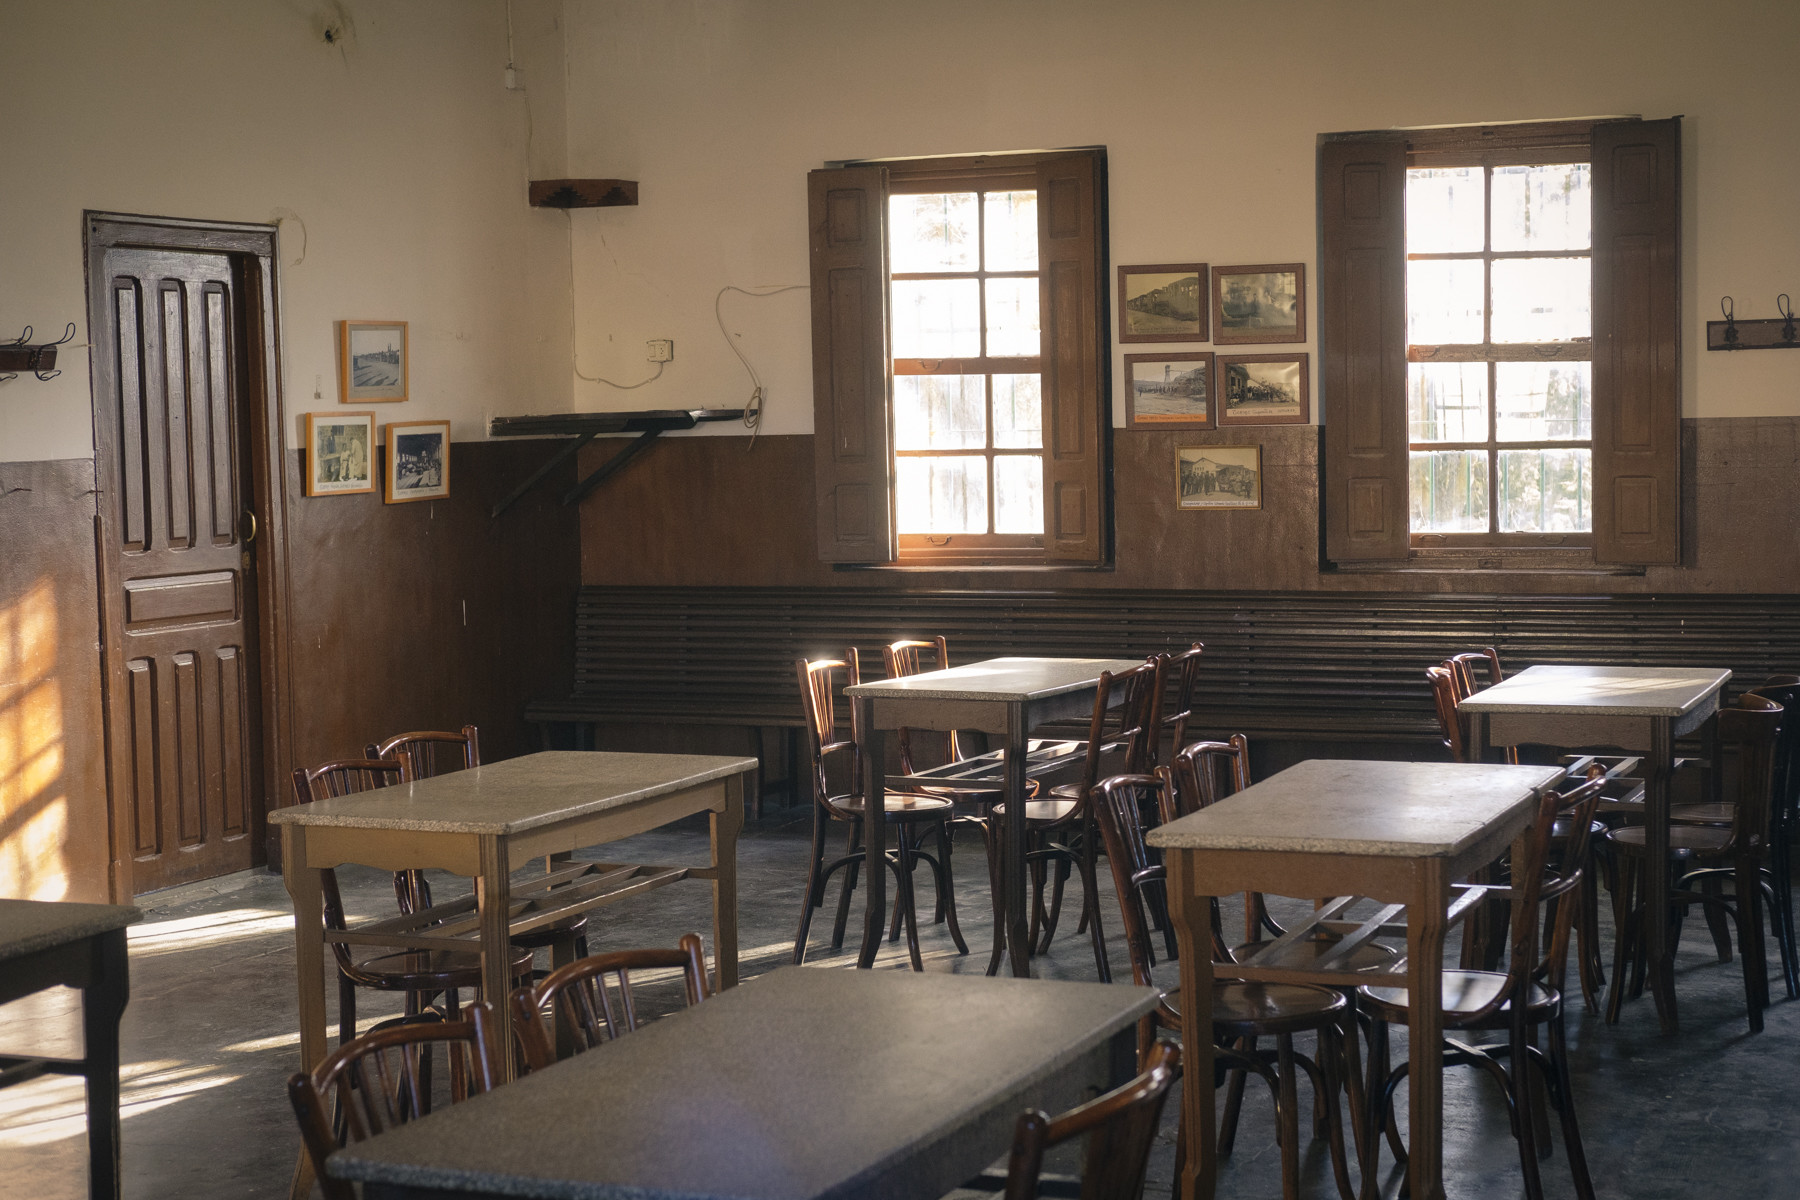 El interior del local La Cultural, en Tormos. La luz del atardecer ilumina las mesas, sillas, puertas y ventanas que estarán ahí desde mediados del siglo pasado.